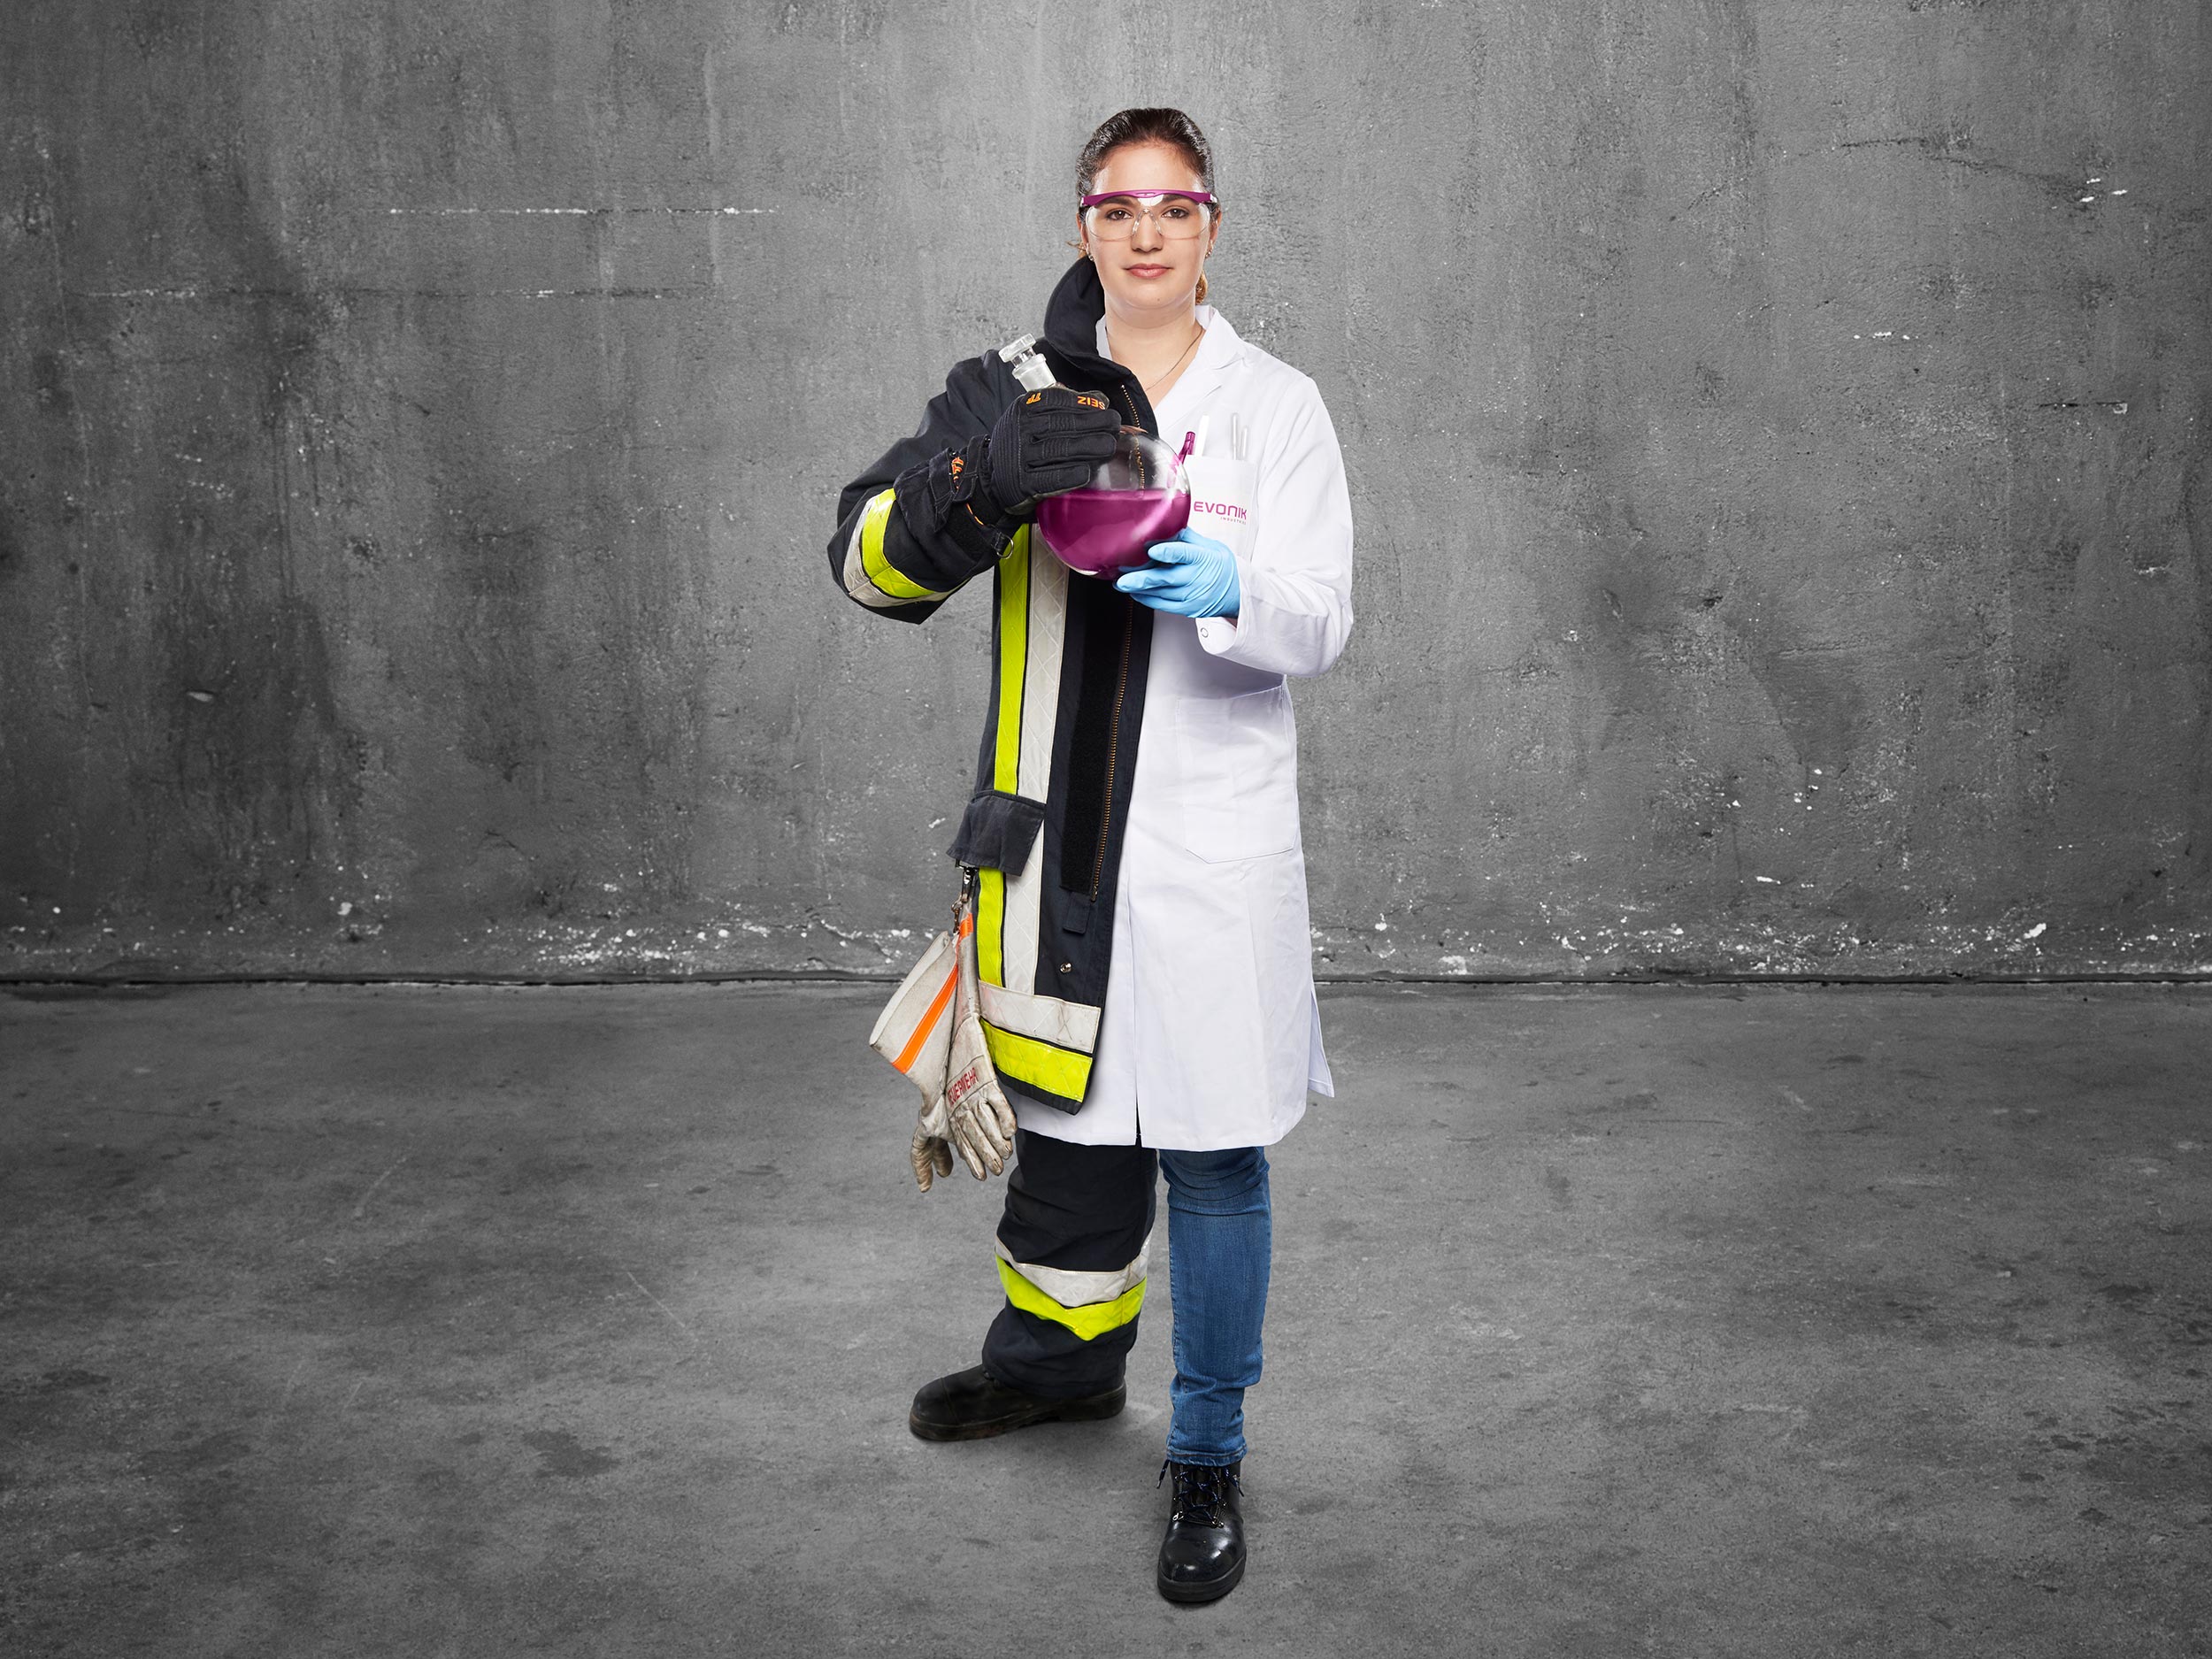 FeuerwehrMenschen Lacklaborantin ist Feuerwehrfrau